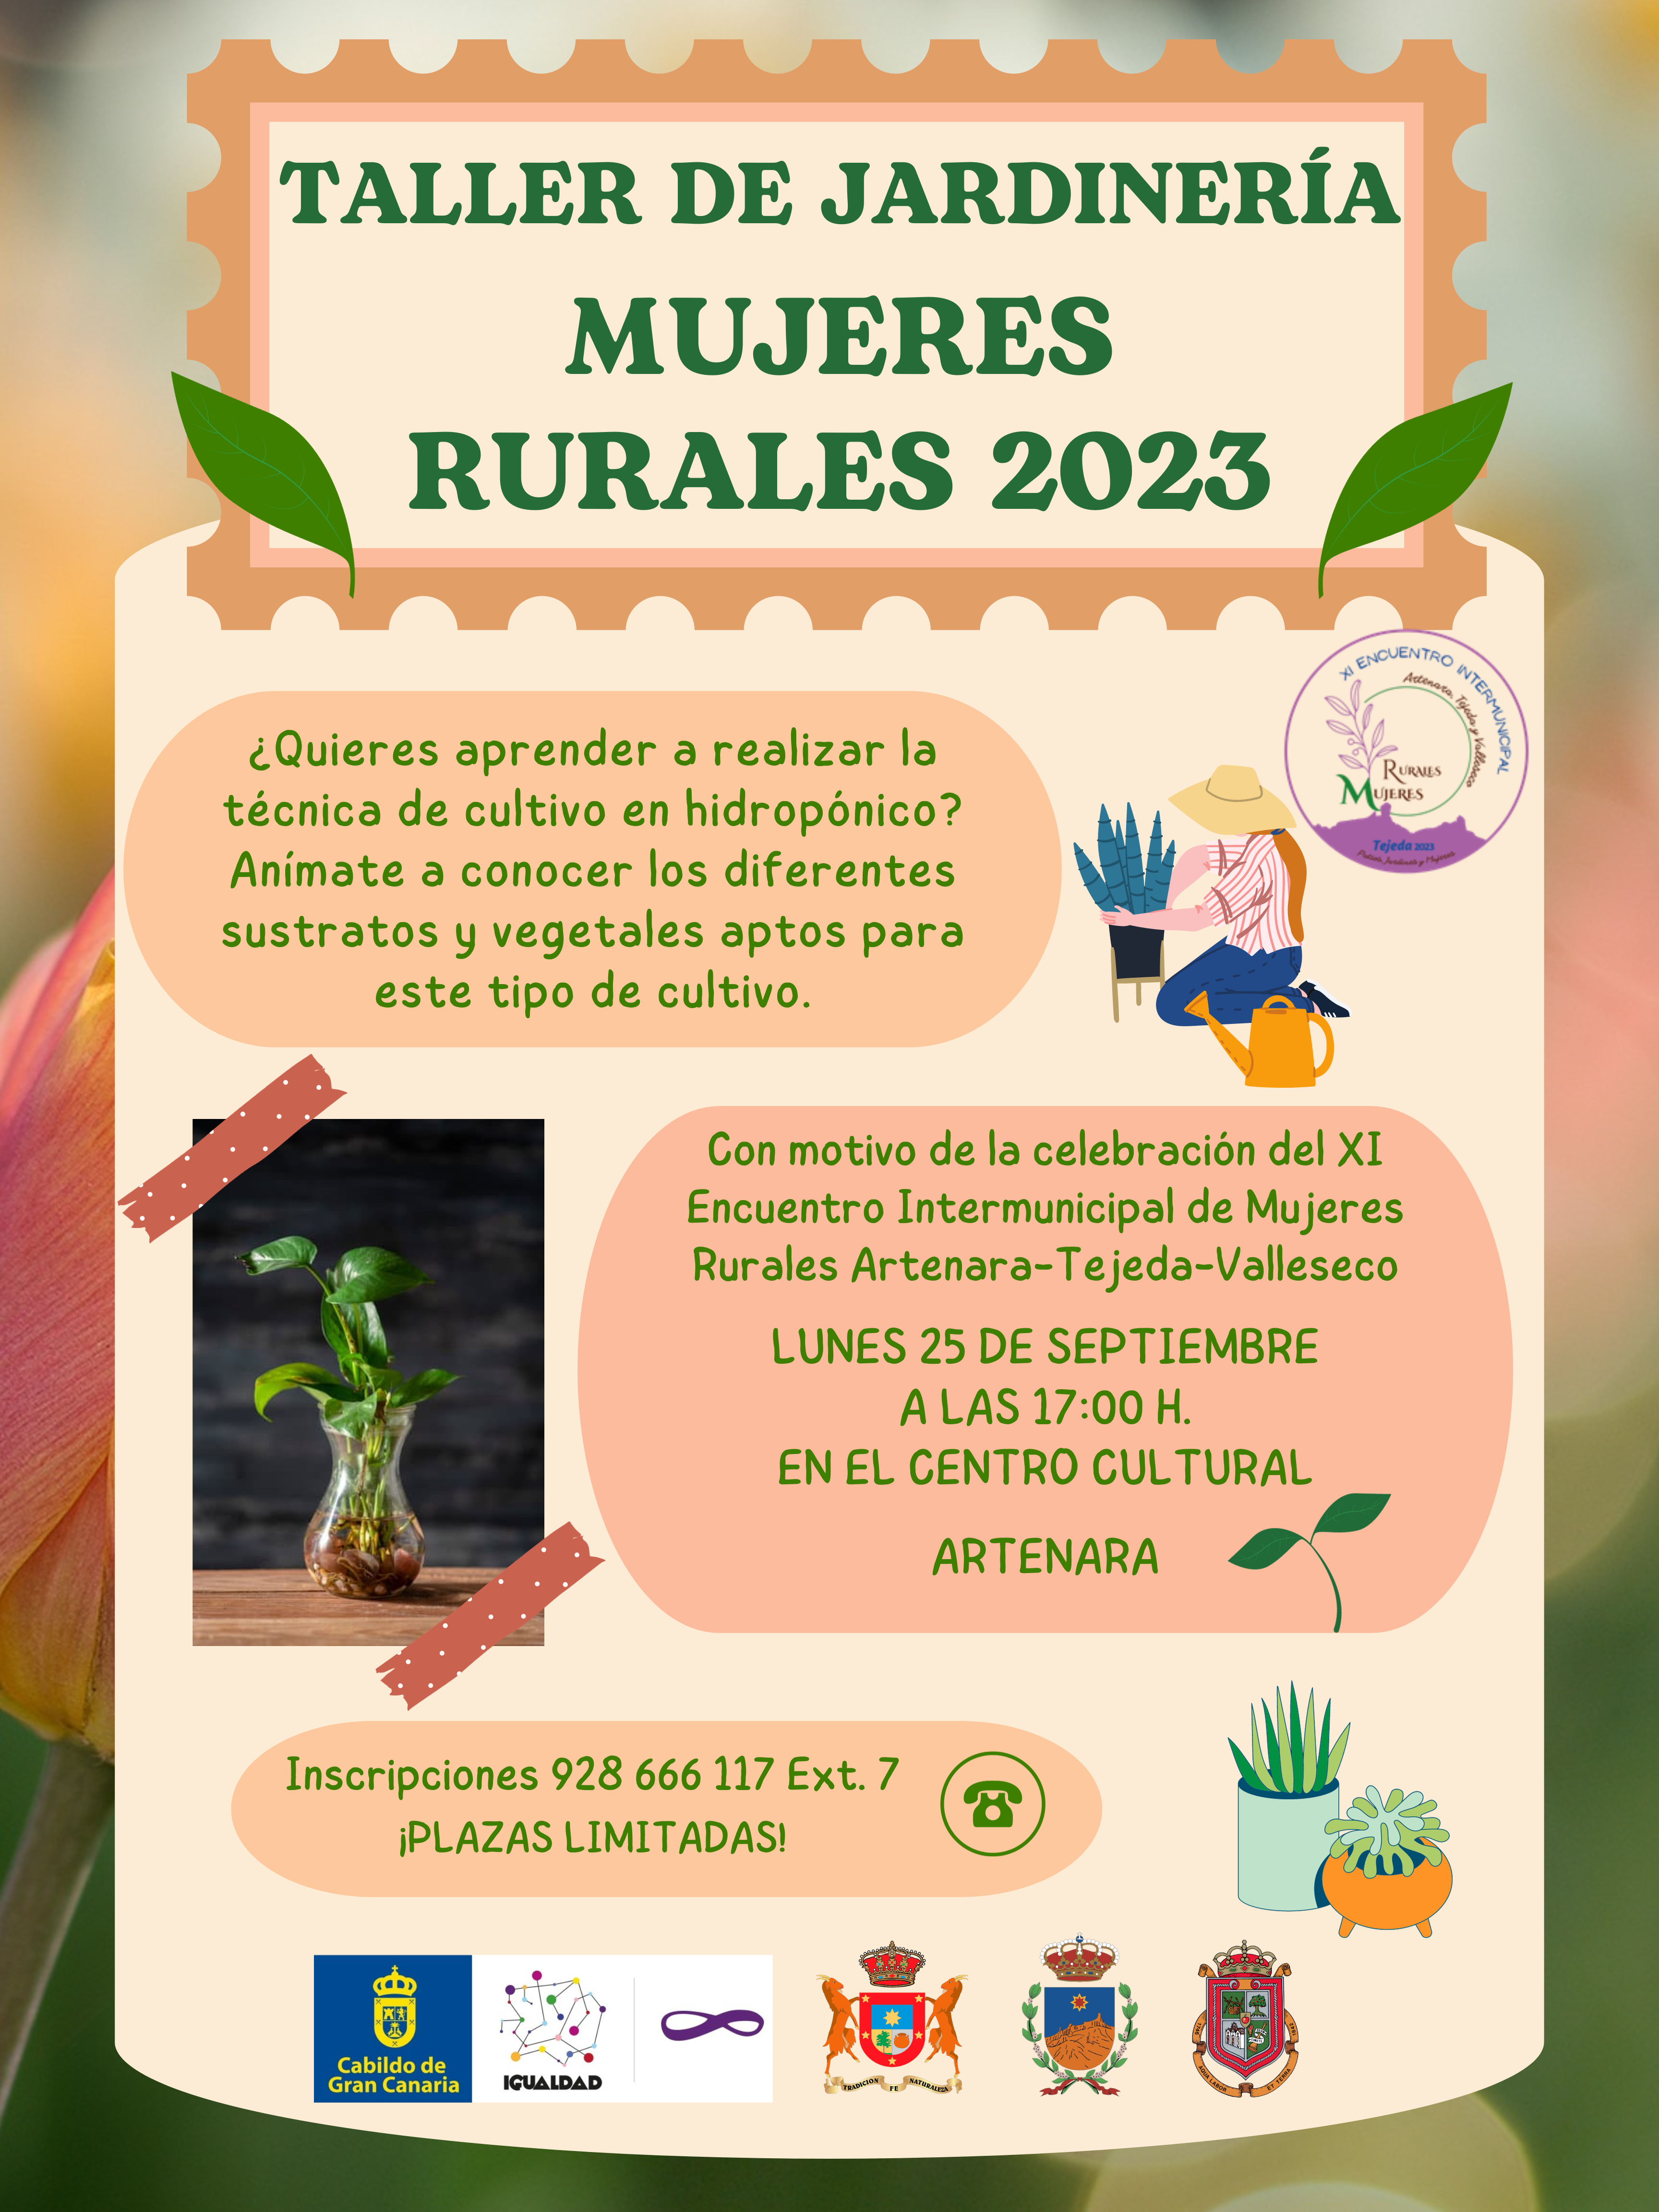 Taller de Jardinería Mujeres Rurales 2023.